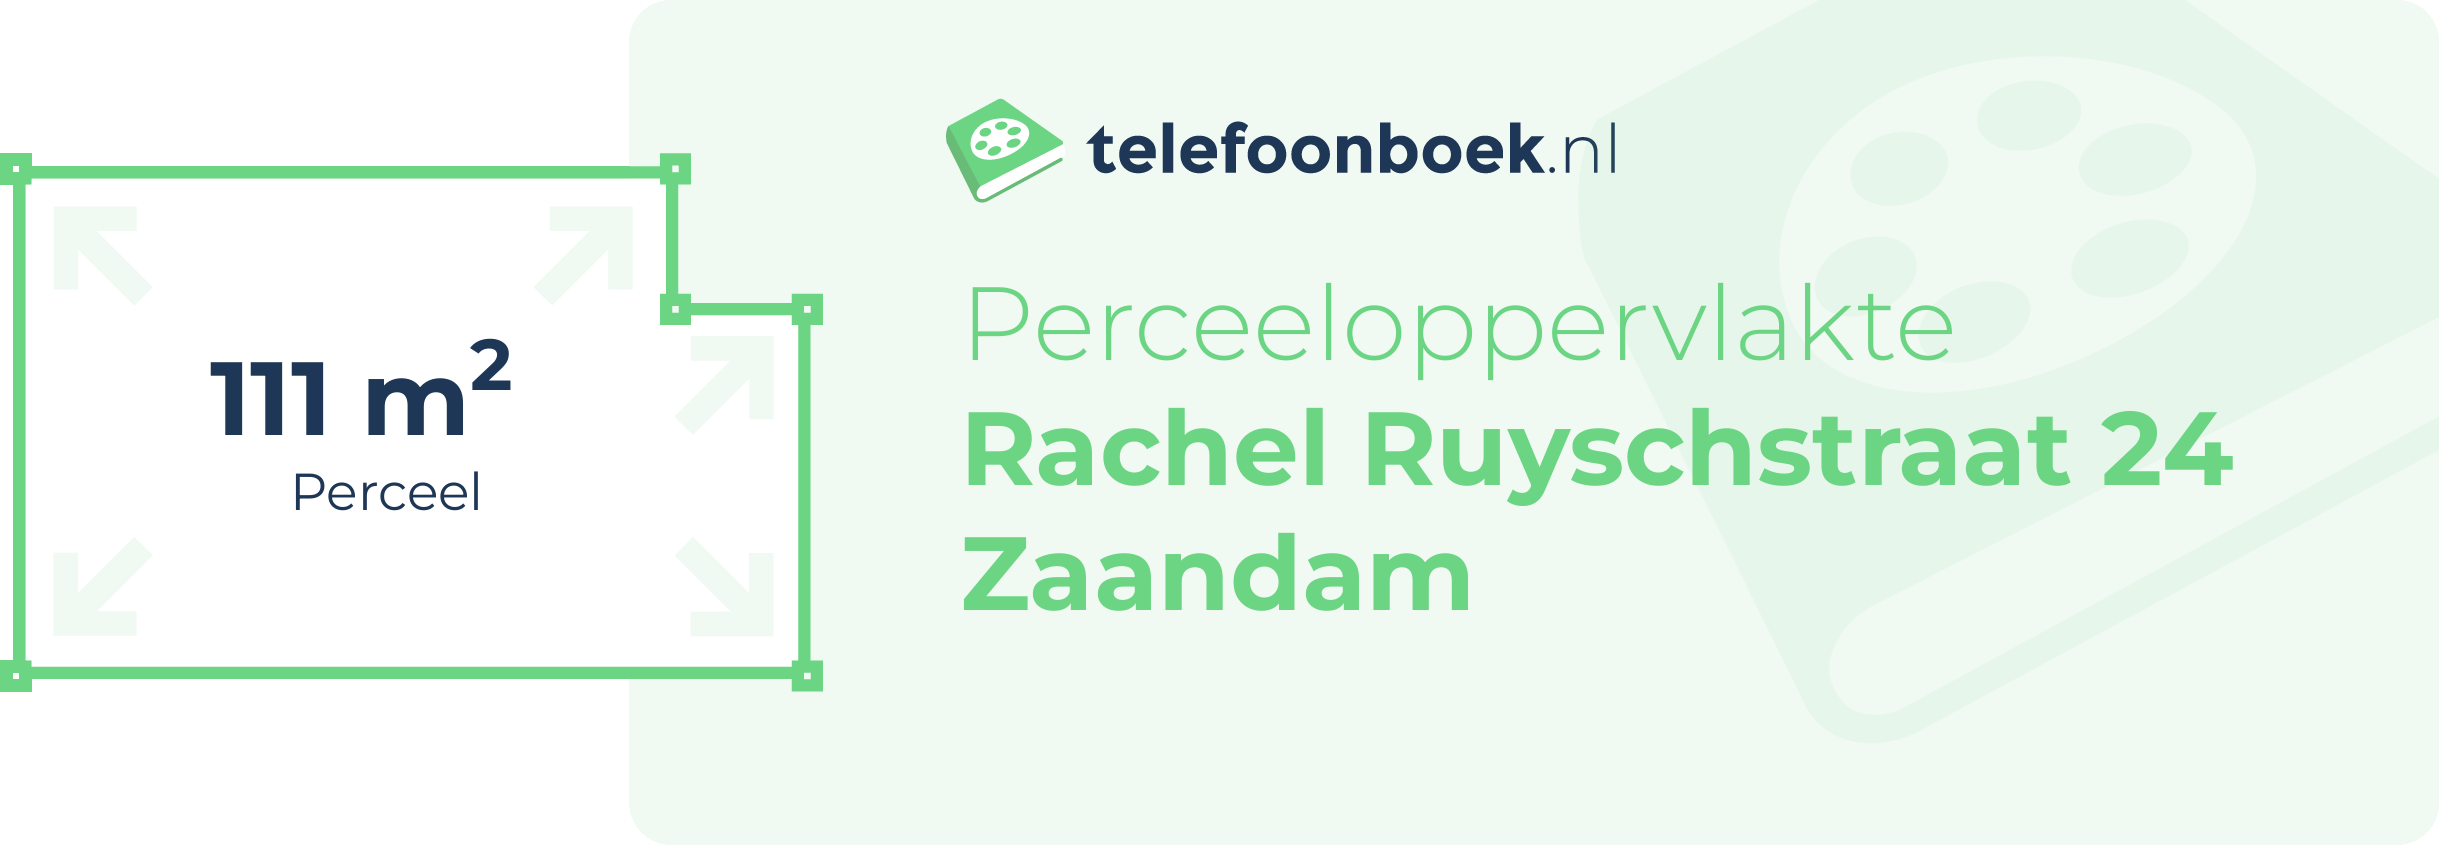 Perceeloppervlakte Rachel Ruyschstraat 24 Zaandam